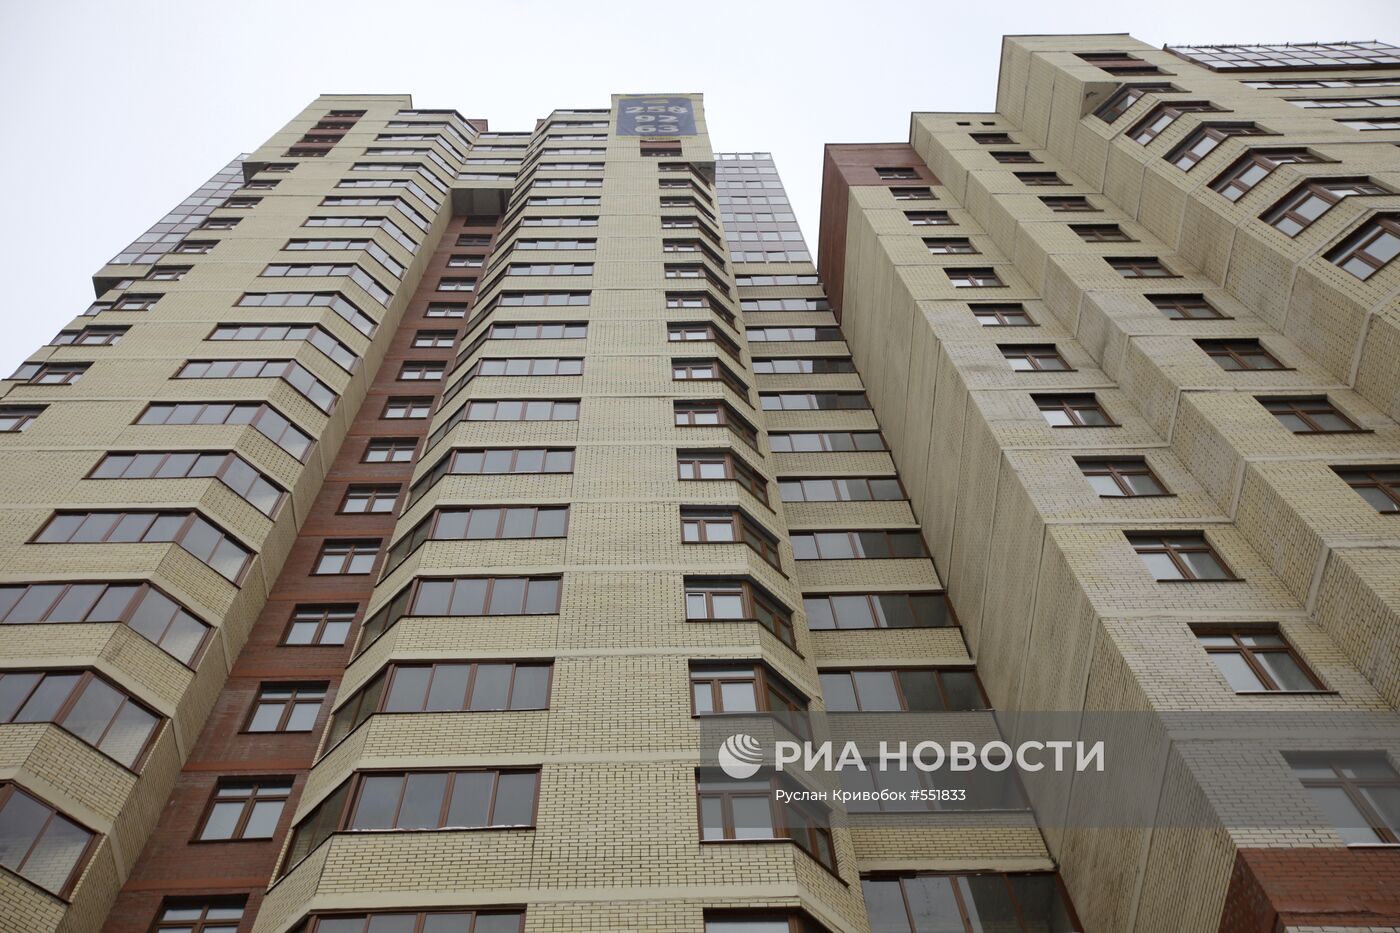 Дом с квартирами для госслужащих на ул. Петрозаводской в Москве